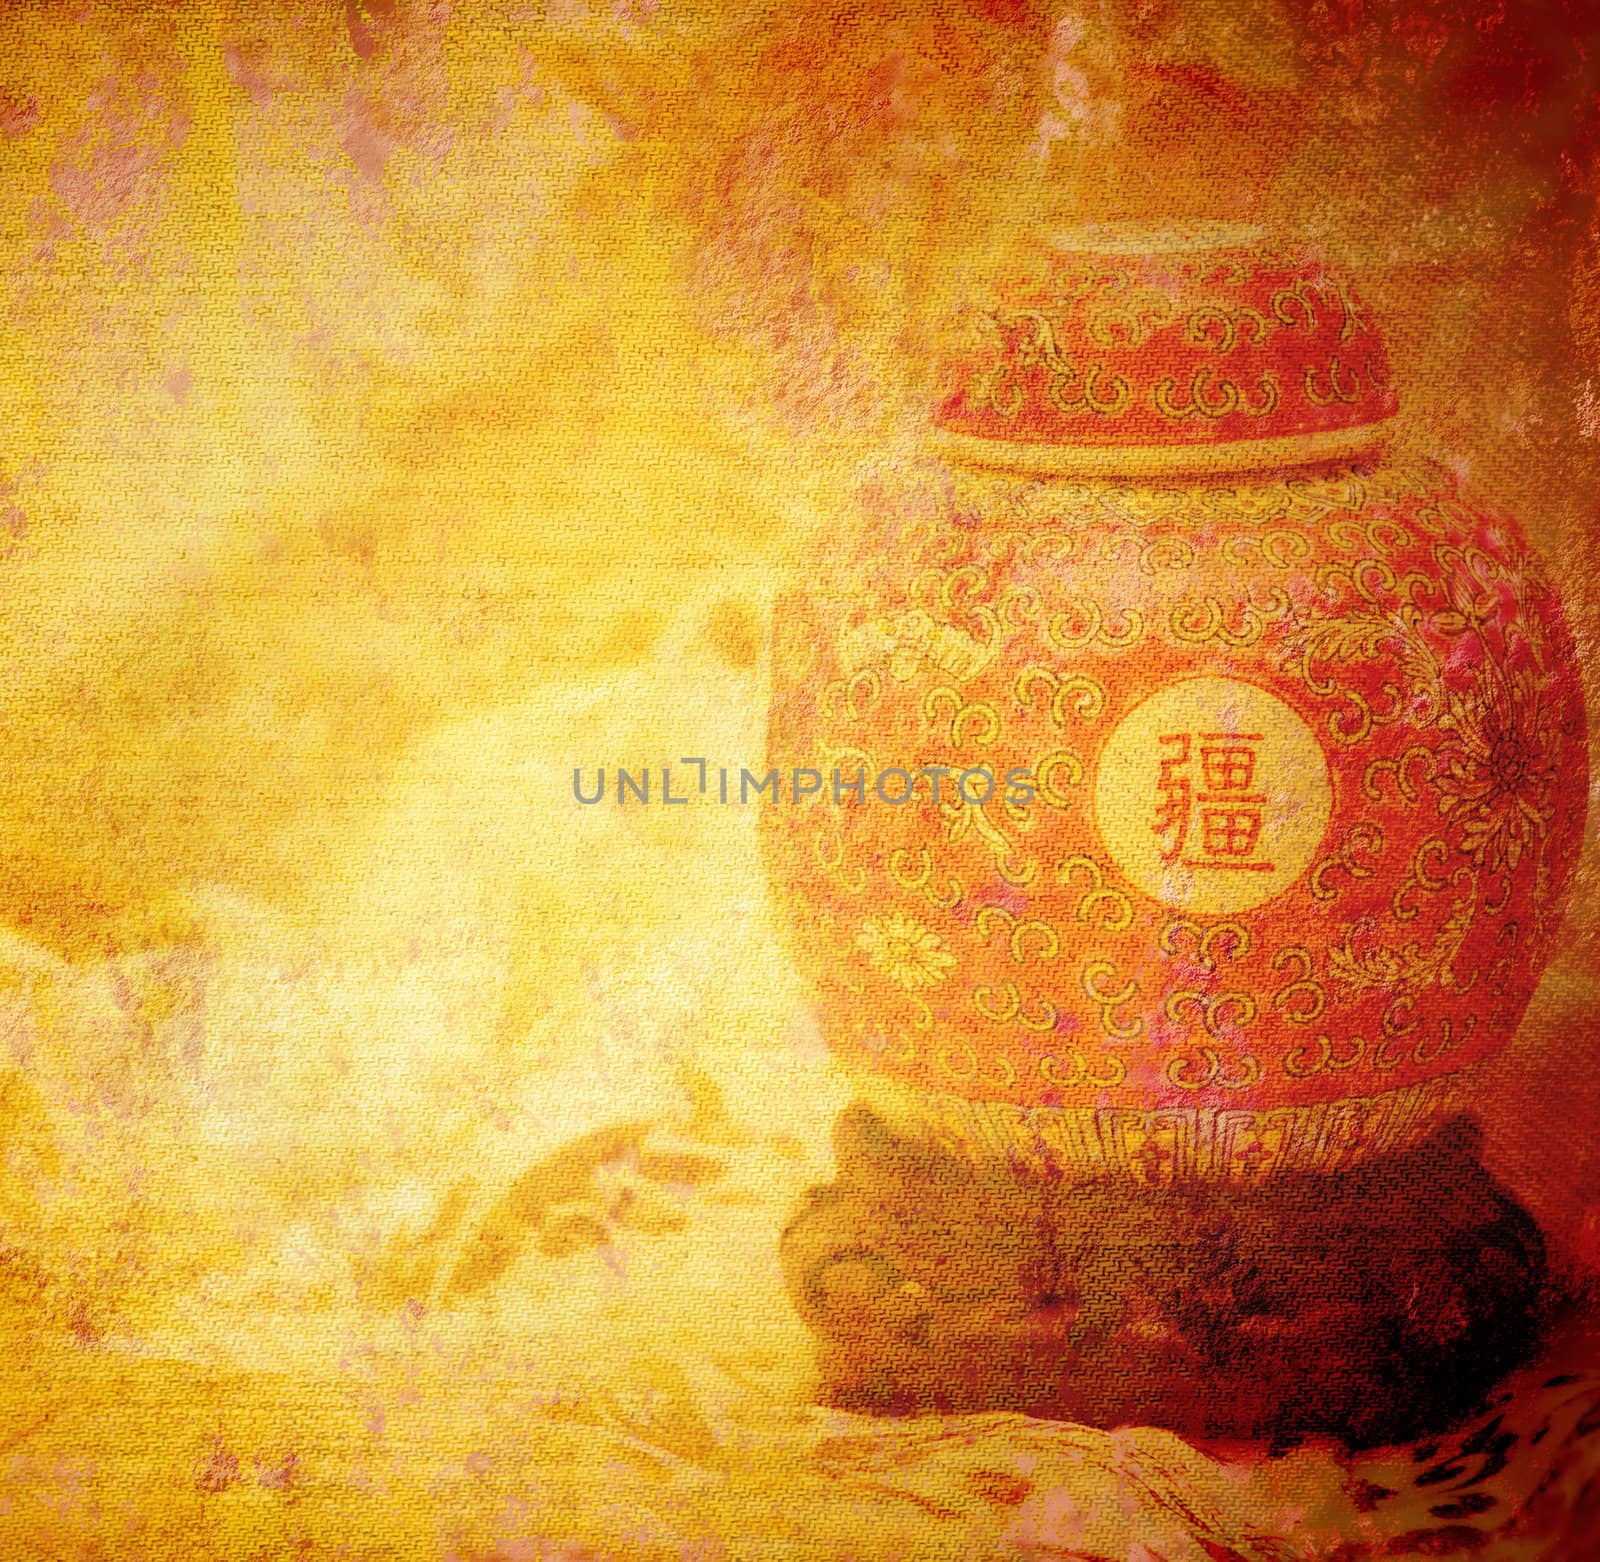 old japanese vase grunge background